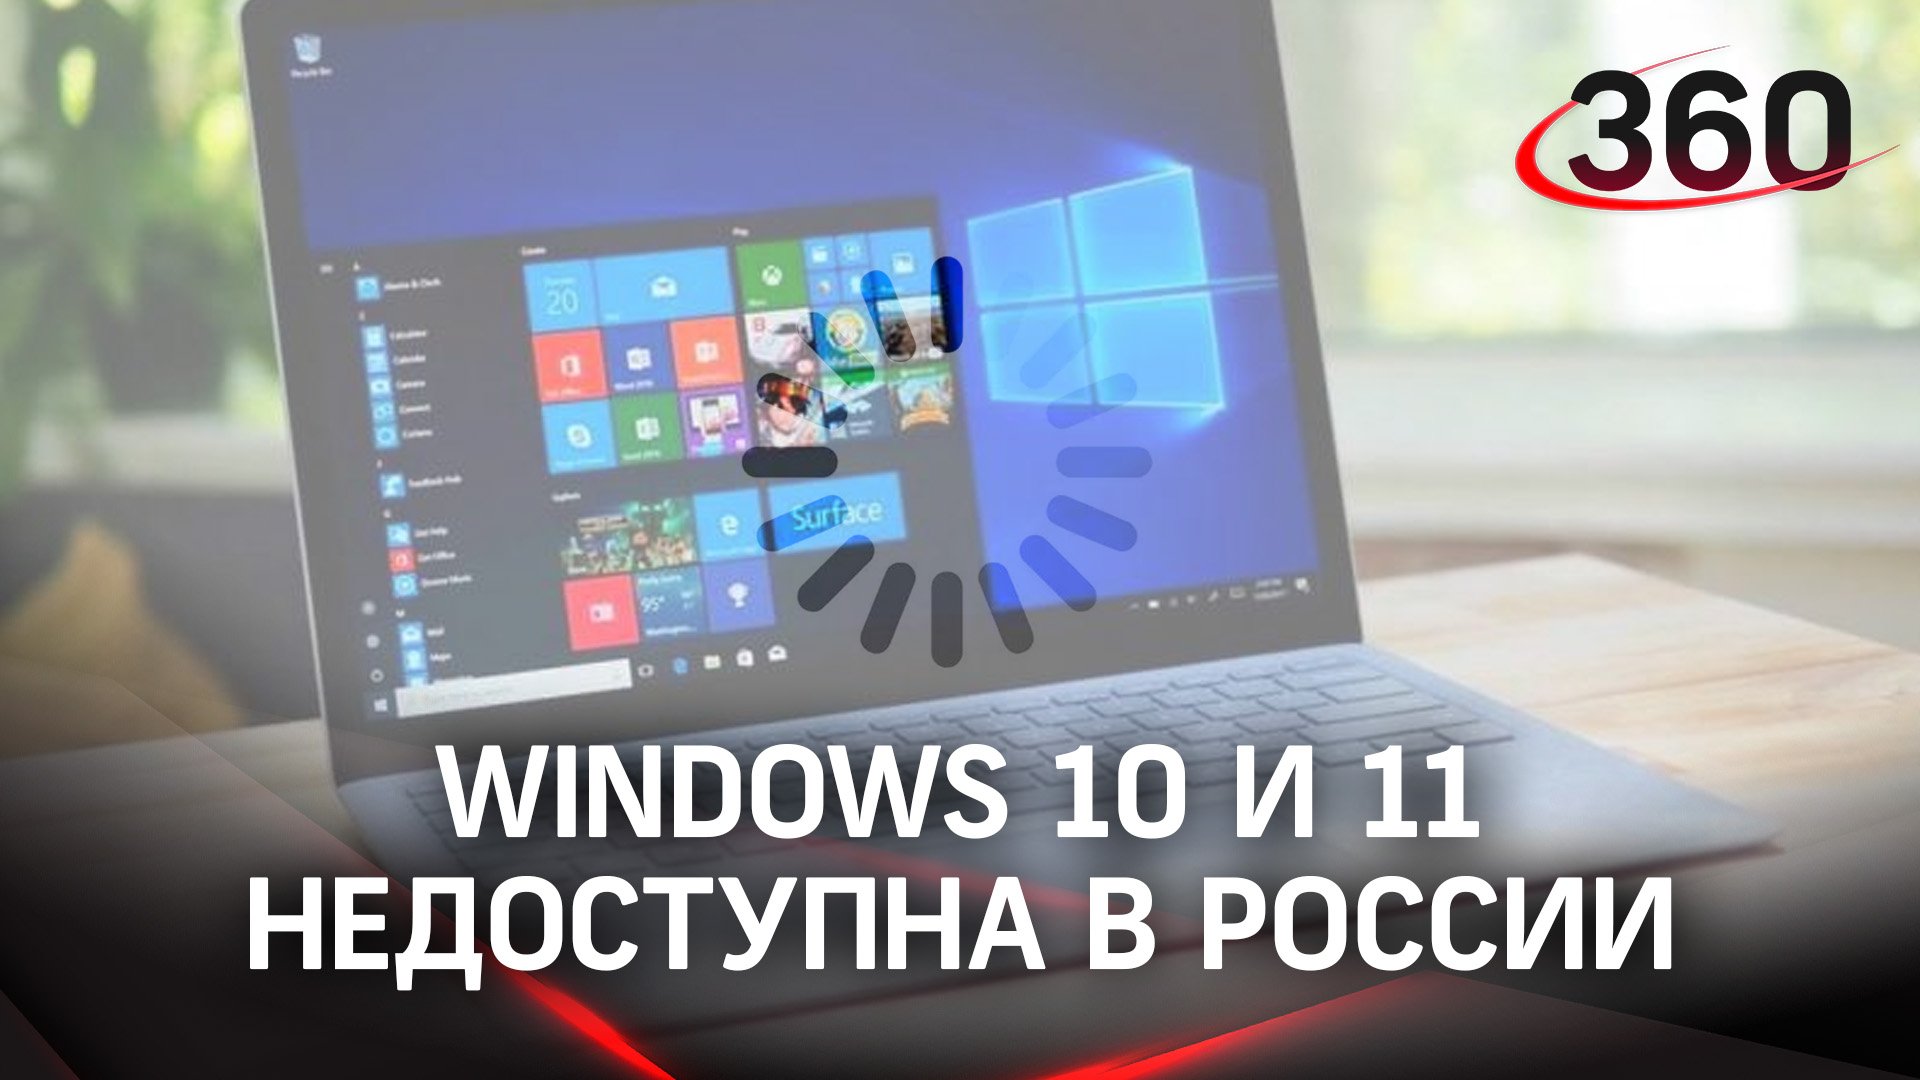 Windows 10 и 11 недоступна в России. Санкции или технический сбой?